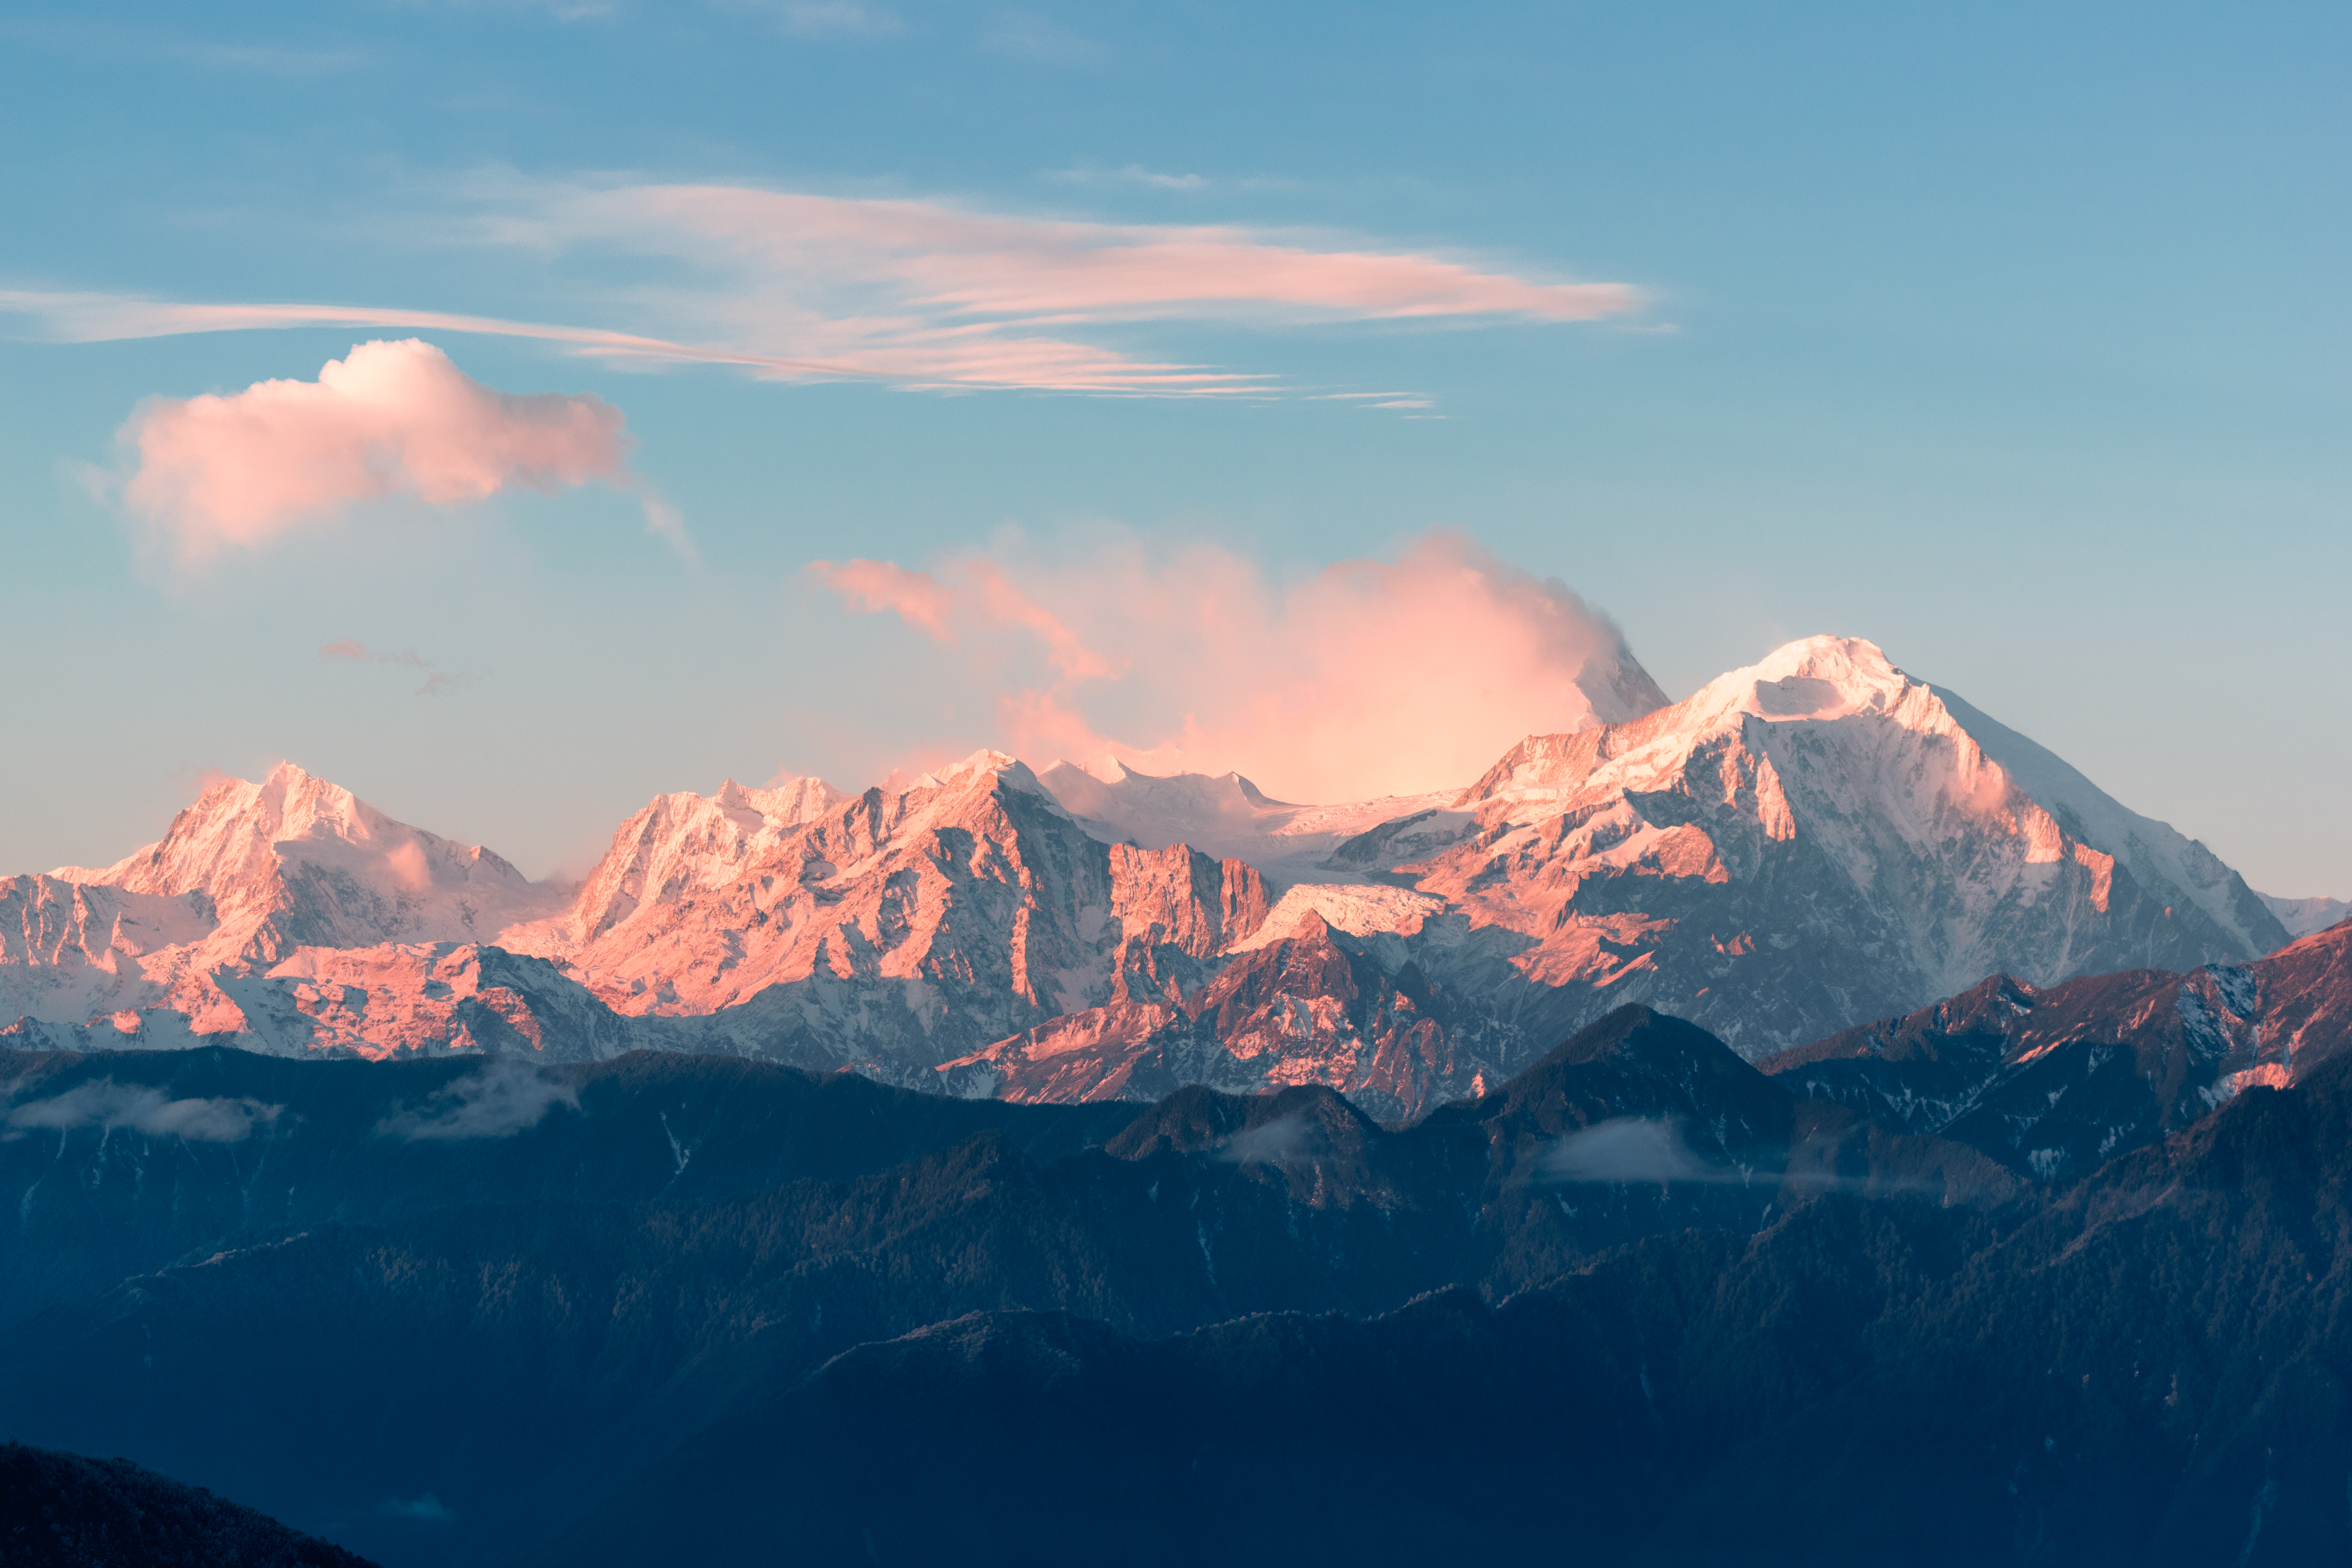 Sunrise mountain desktop wallpaper, minimal | Free Photo - rawpixel